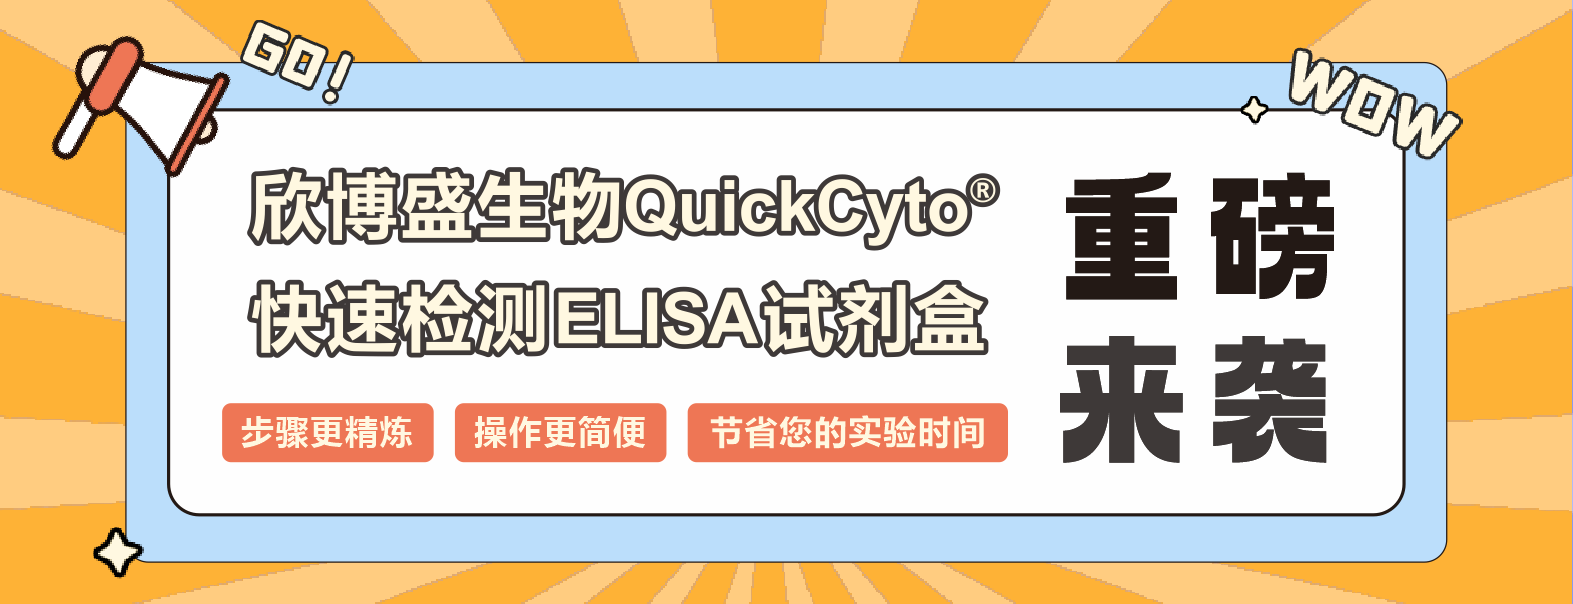 欣博盛生物QuickCyto®快速检测ELISA试剂盒重磅来袭！